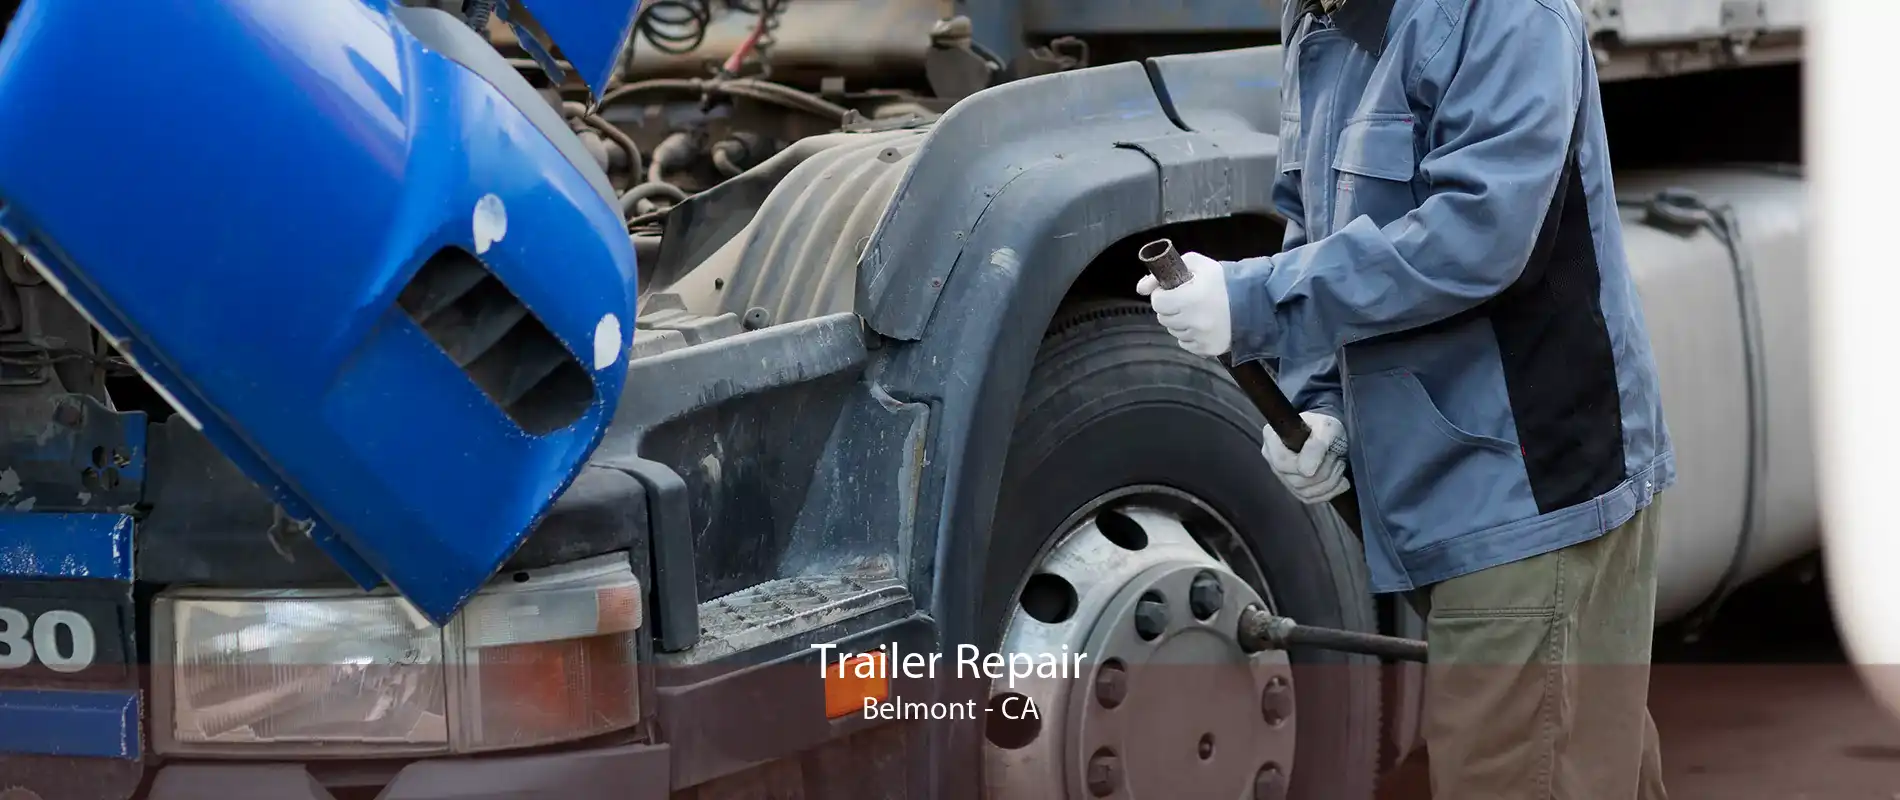 Trailer Repair Belmont - CA